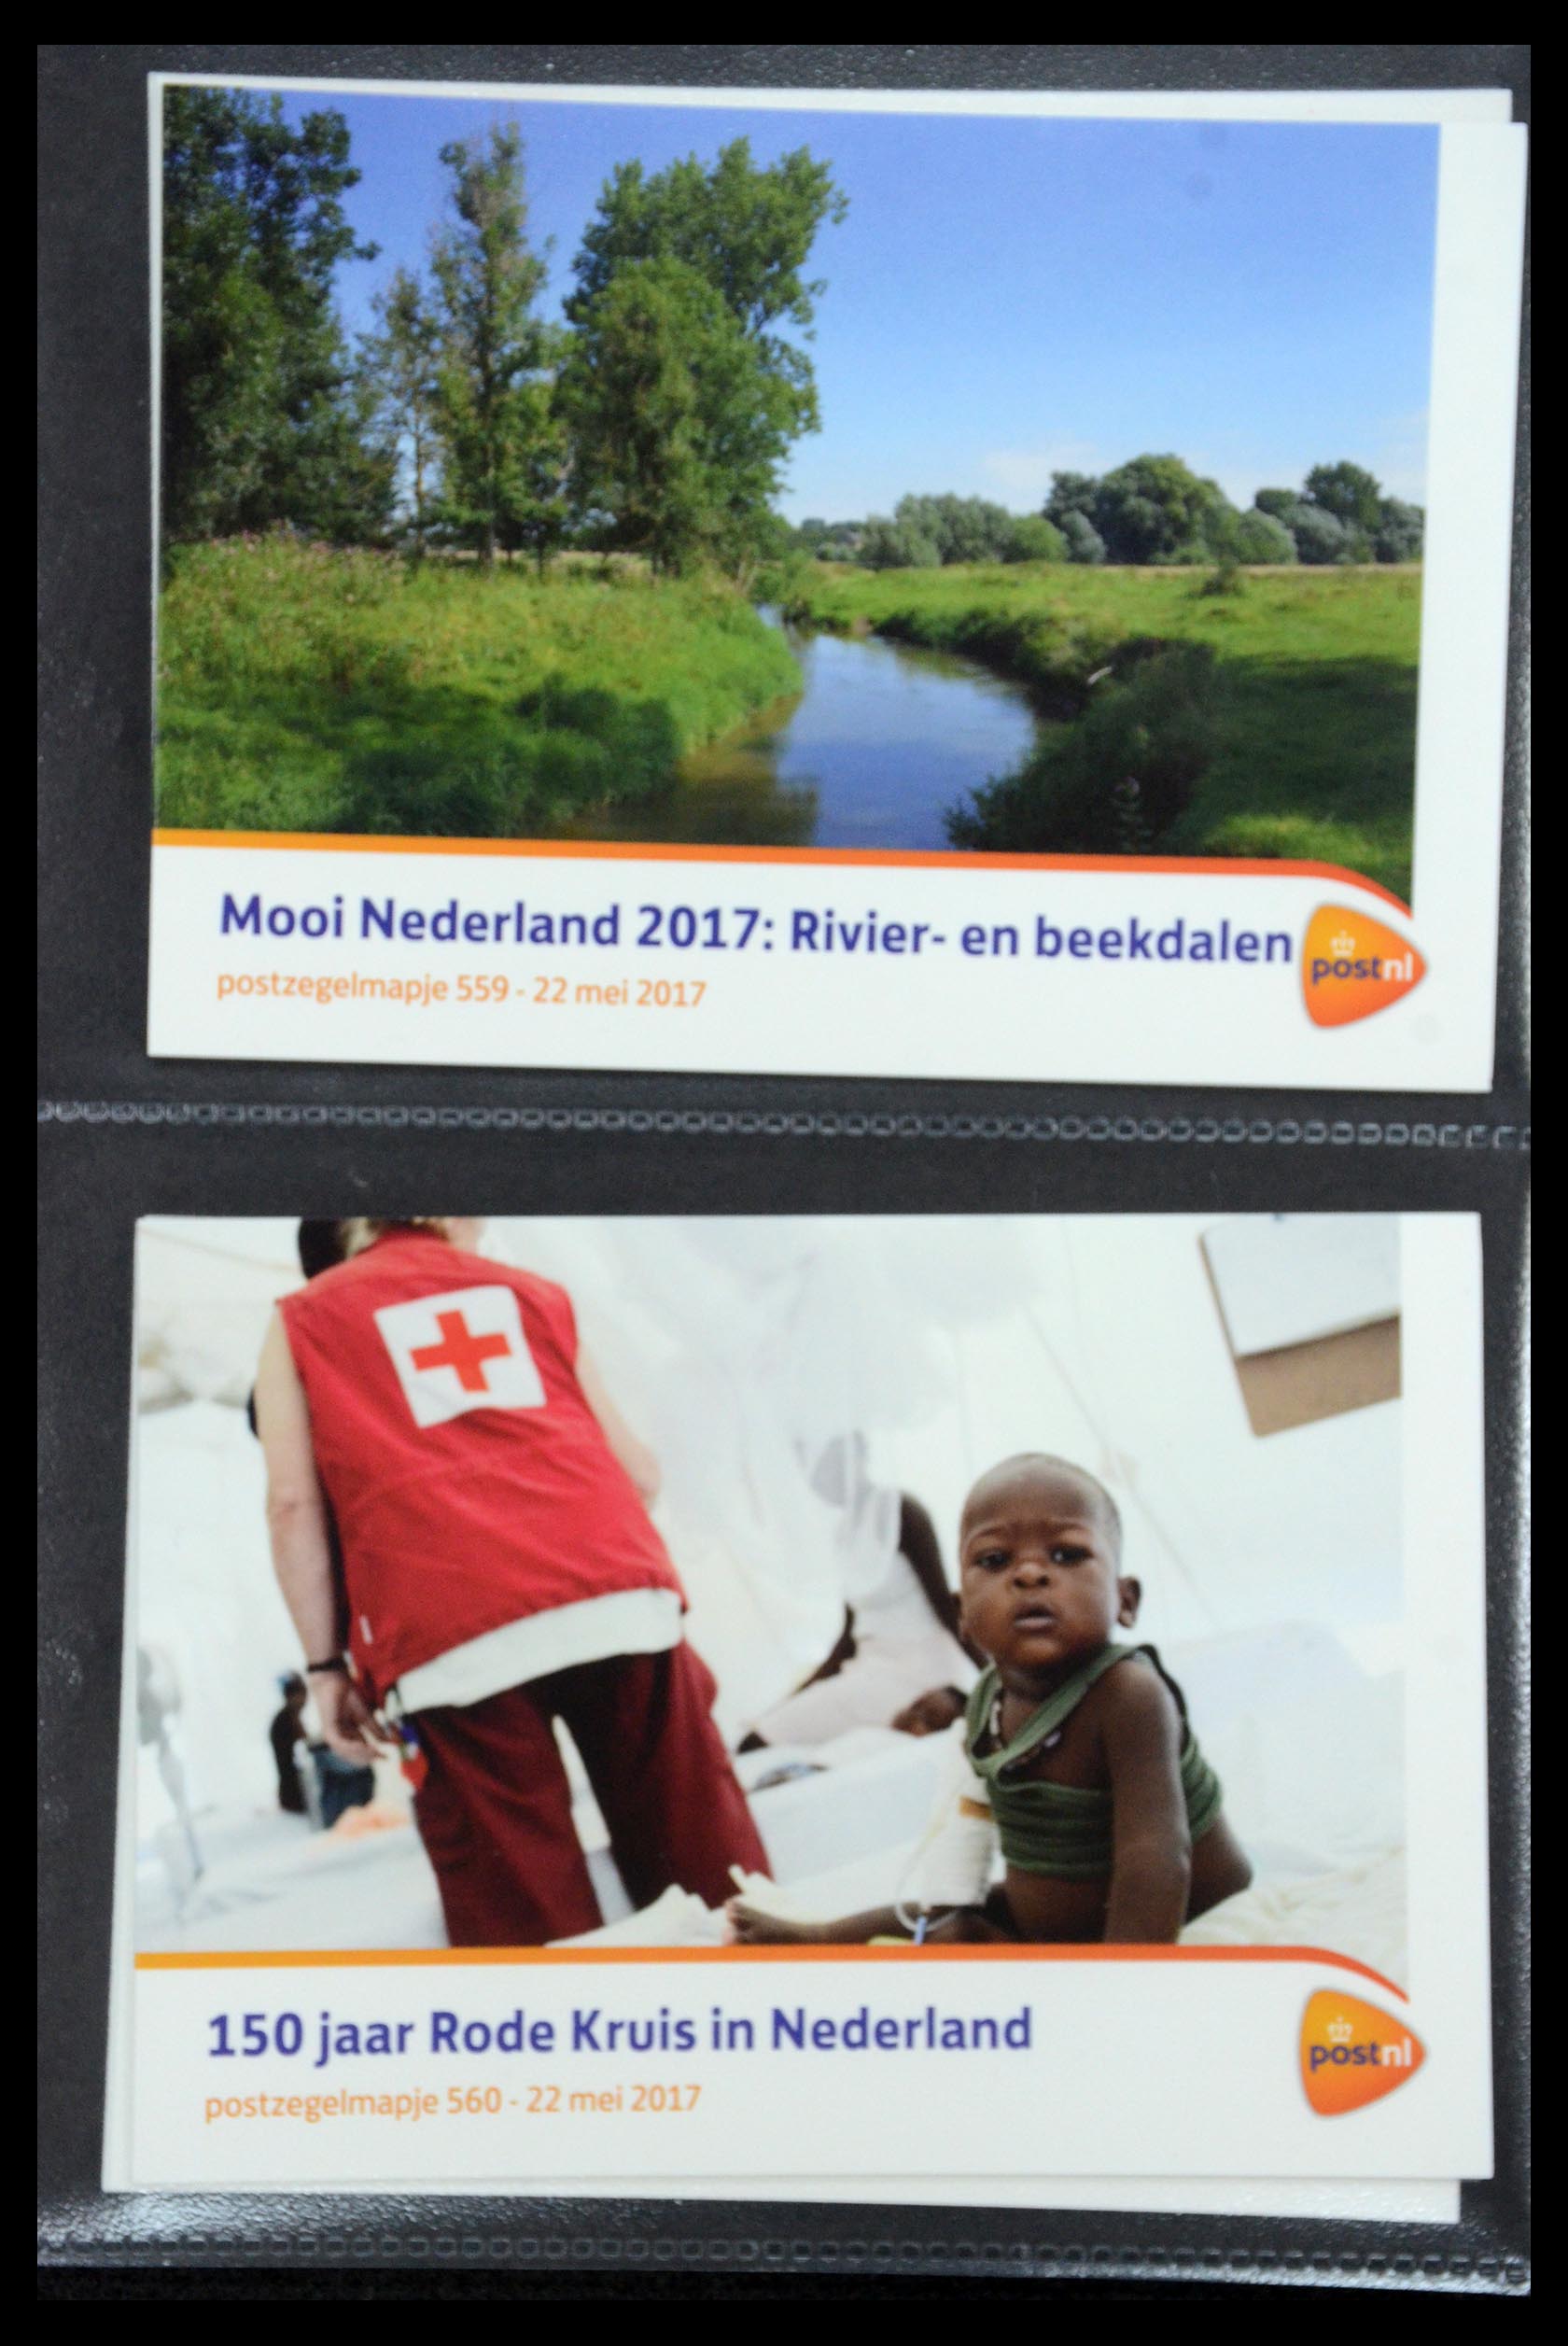 35187 335 - Stamp Collection 35187 Netherlands PTT presentation packs 1982-2019!